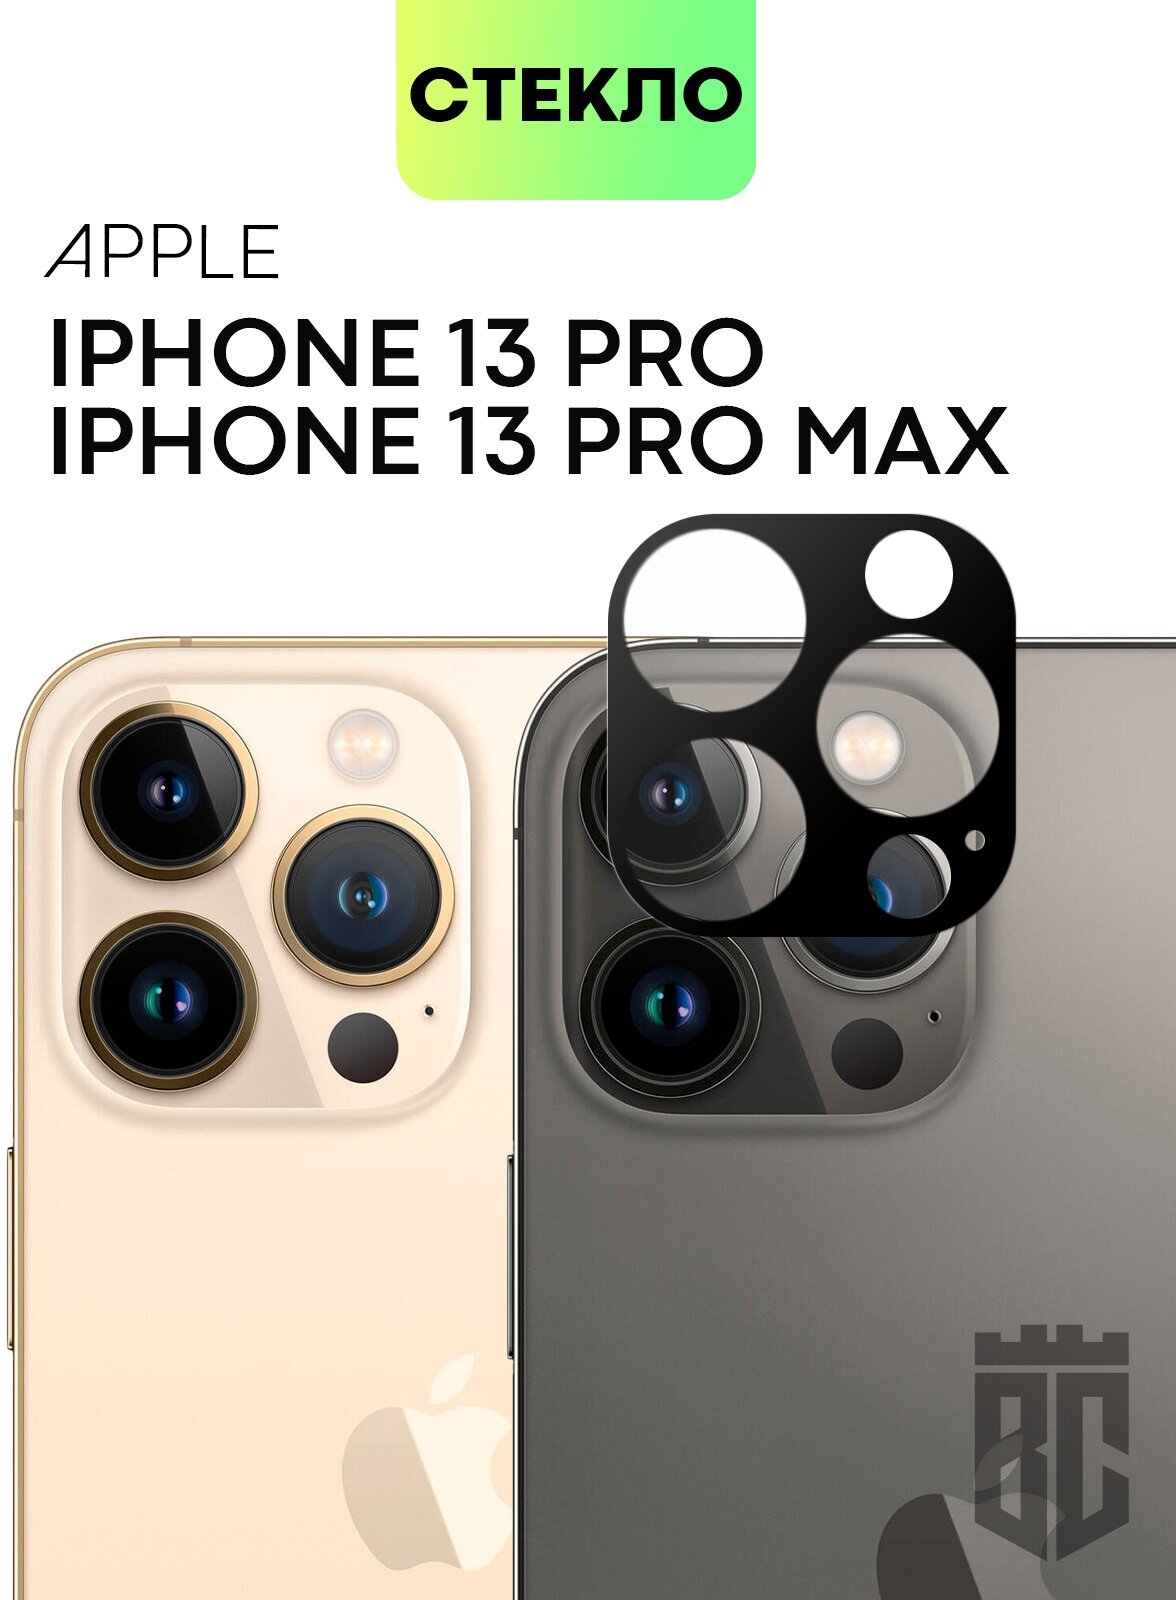 Стекло на камеру телефона Apple iPhone 13 Pro iPhone 13 Pro Max (Эпл Айфон 13 Про 13 Про Макс) защитное стекло BROSCORP для защиты камер с рамкой